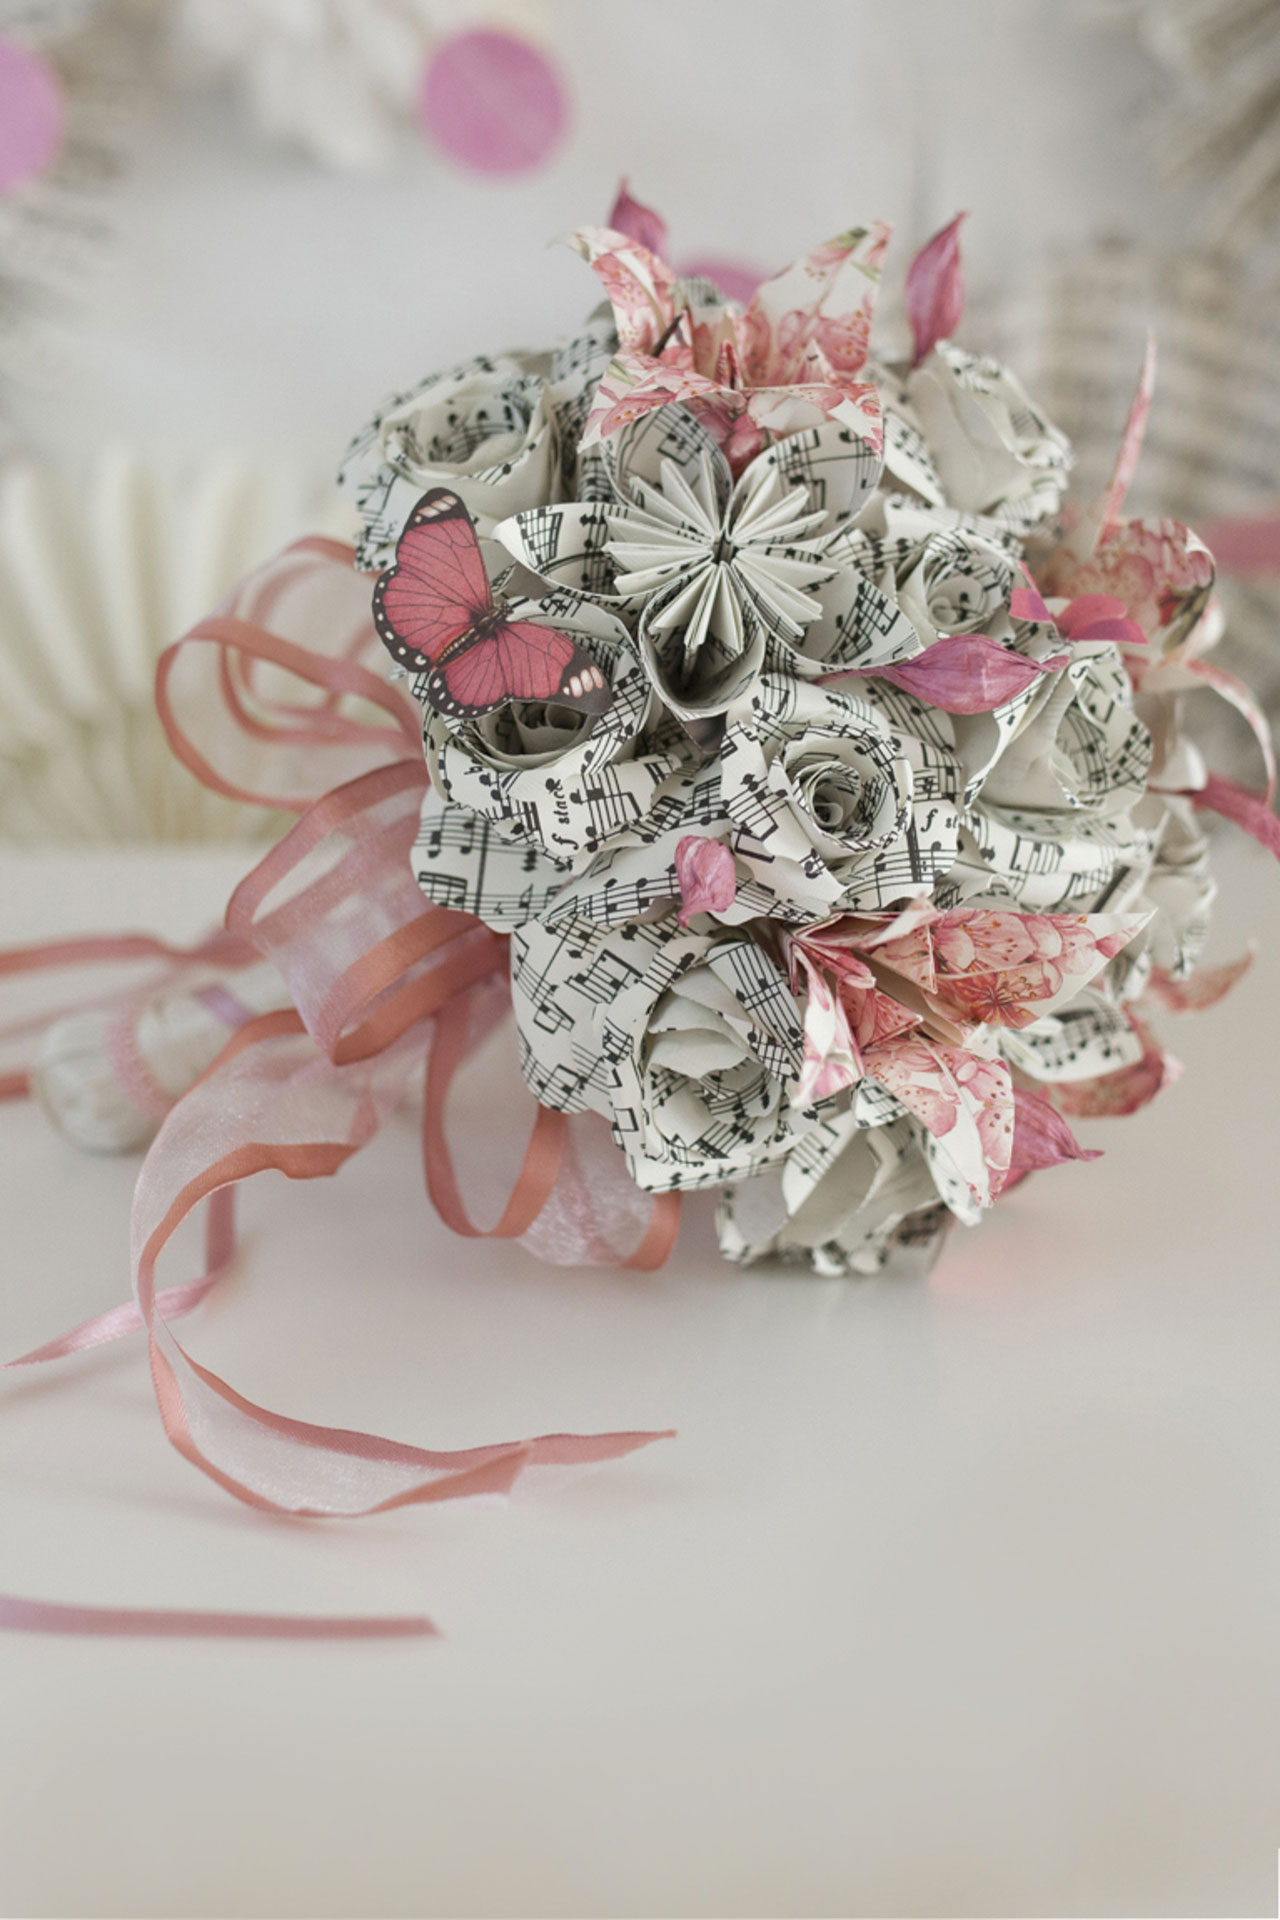 Come creare un bouquet di fiori di carta da sposa, il tutorial